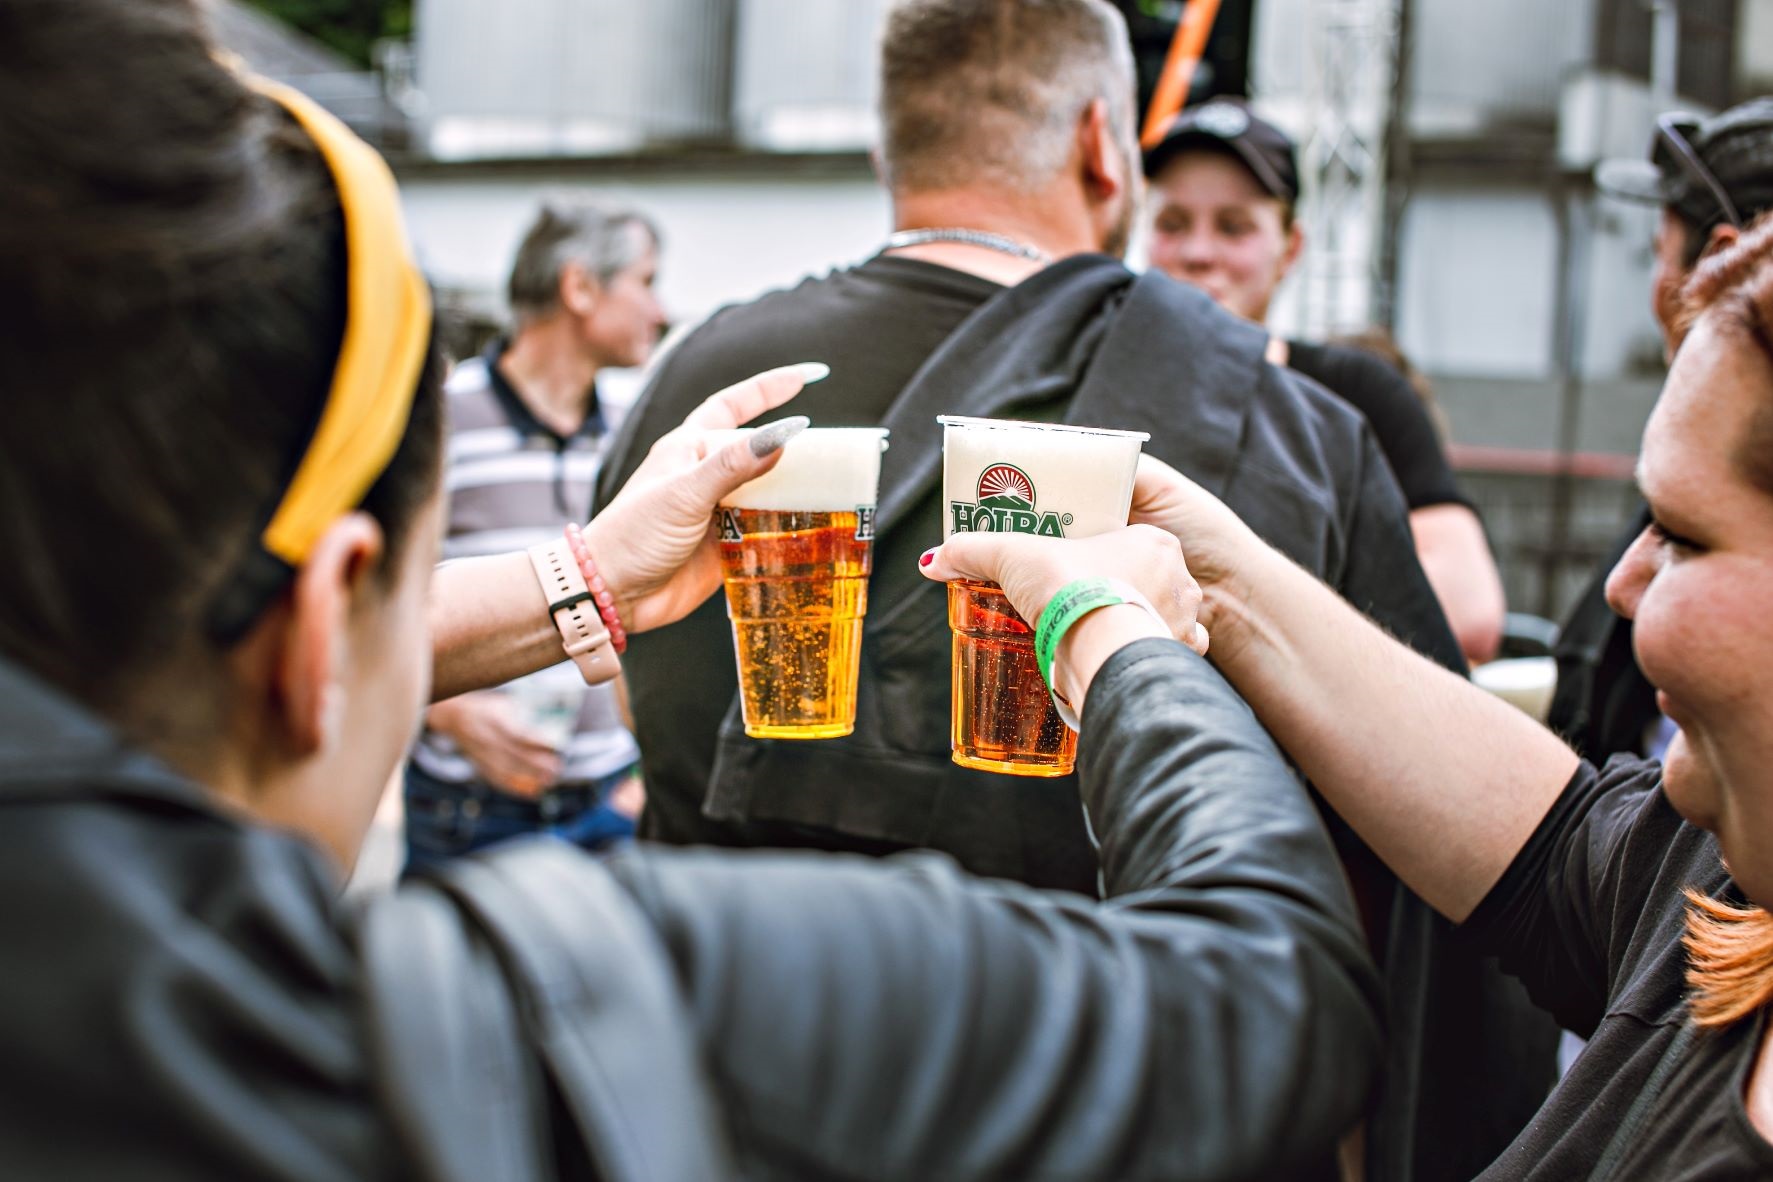 Pivovarské slavnosti HOLBA přilákaly téměř 5 000 lidí, vypilo se 30 000 půllitrů piva